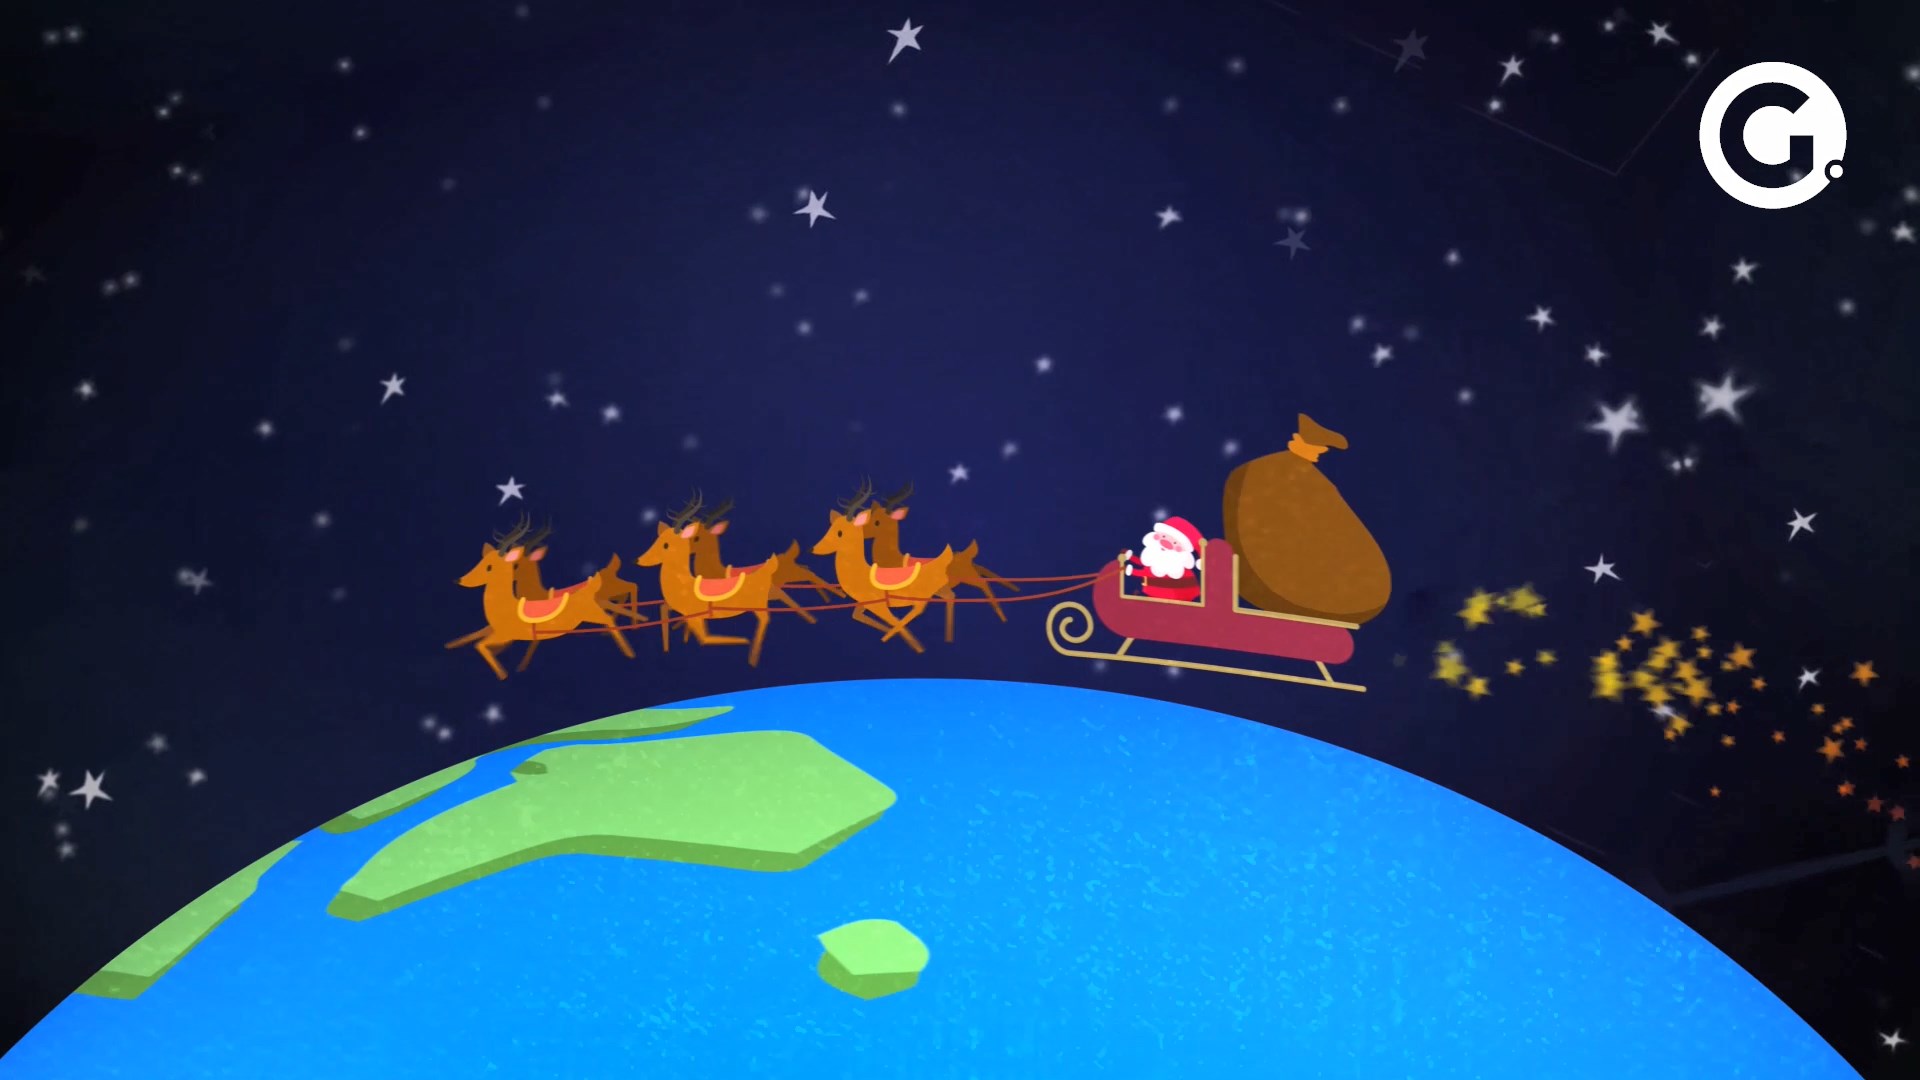 Acompanhe a travessia do Papai Noel pelo mundo e veja quando ele